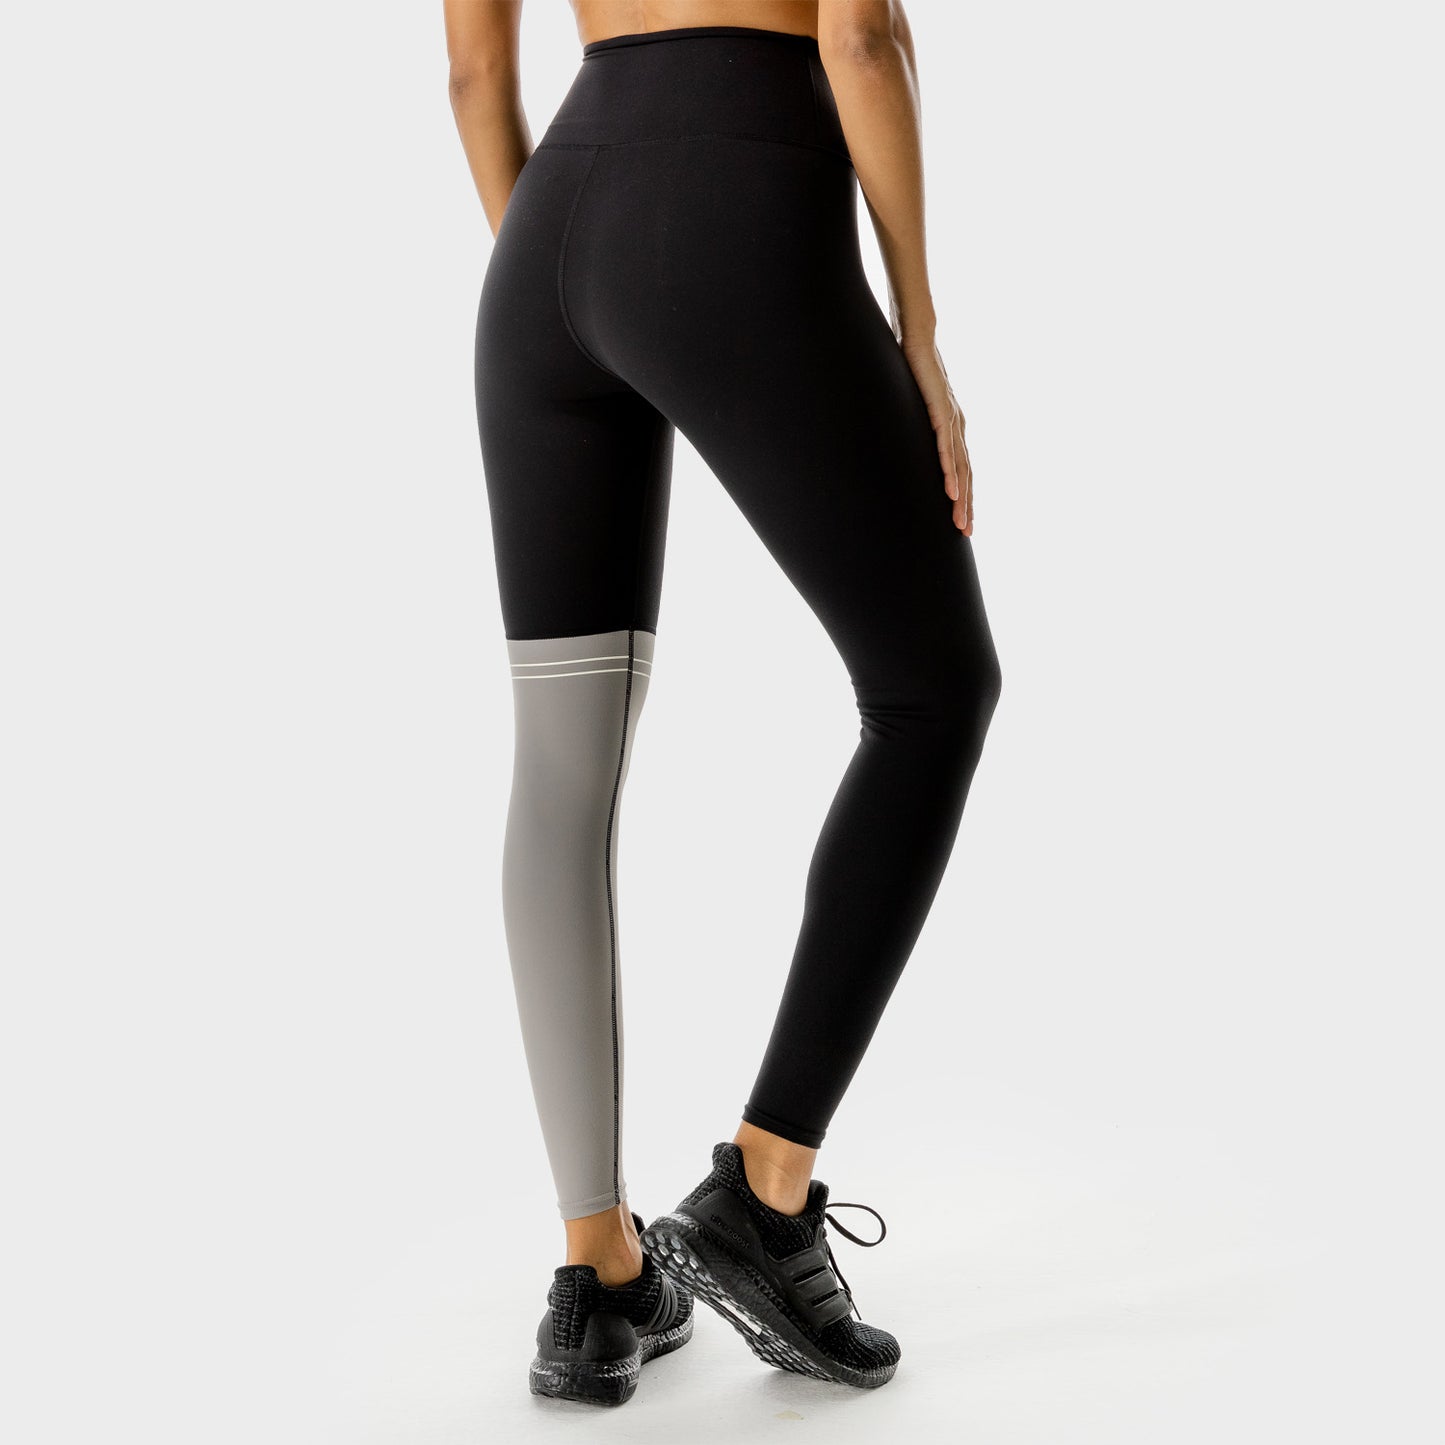 SQUATWOL-workout-clothes-lab-360-colour-block-leggings-black-gym-leggings-for-women